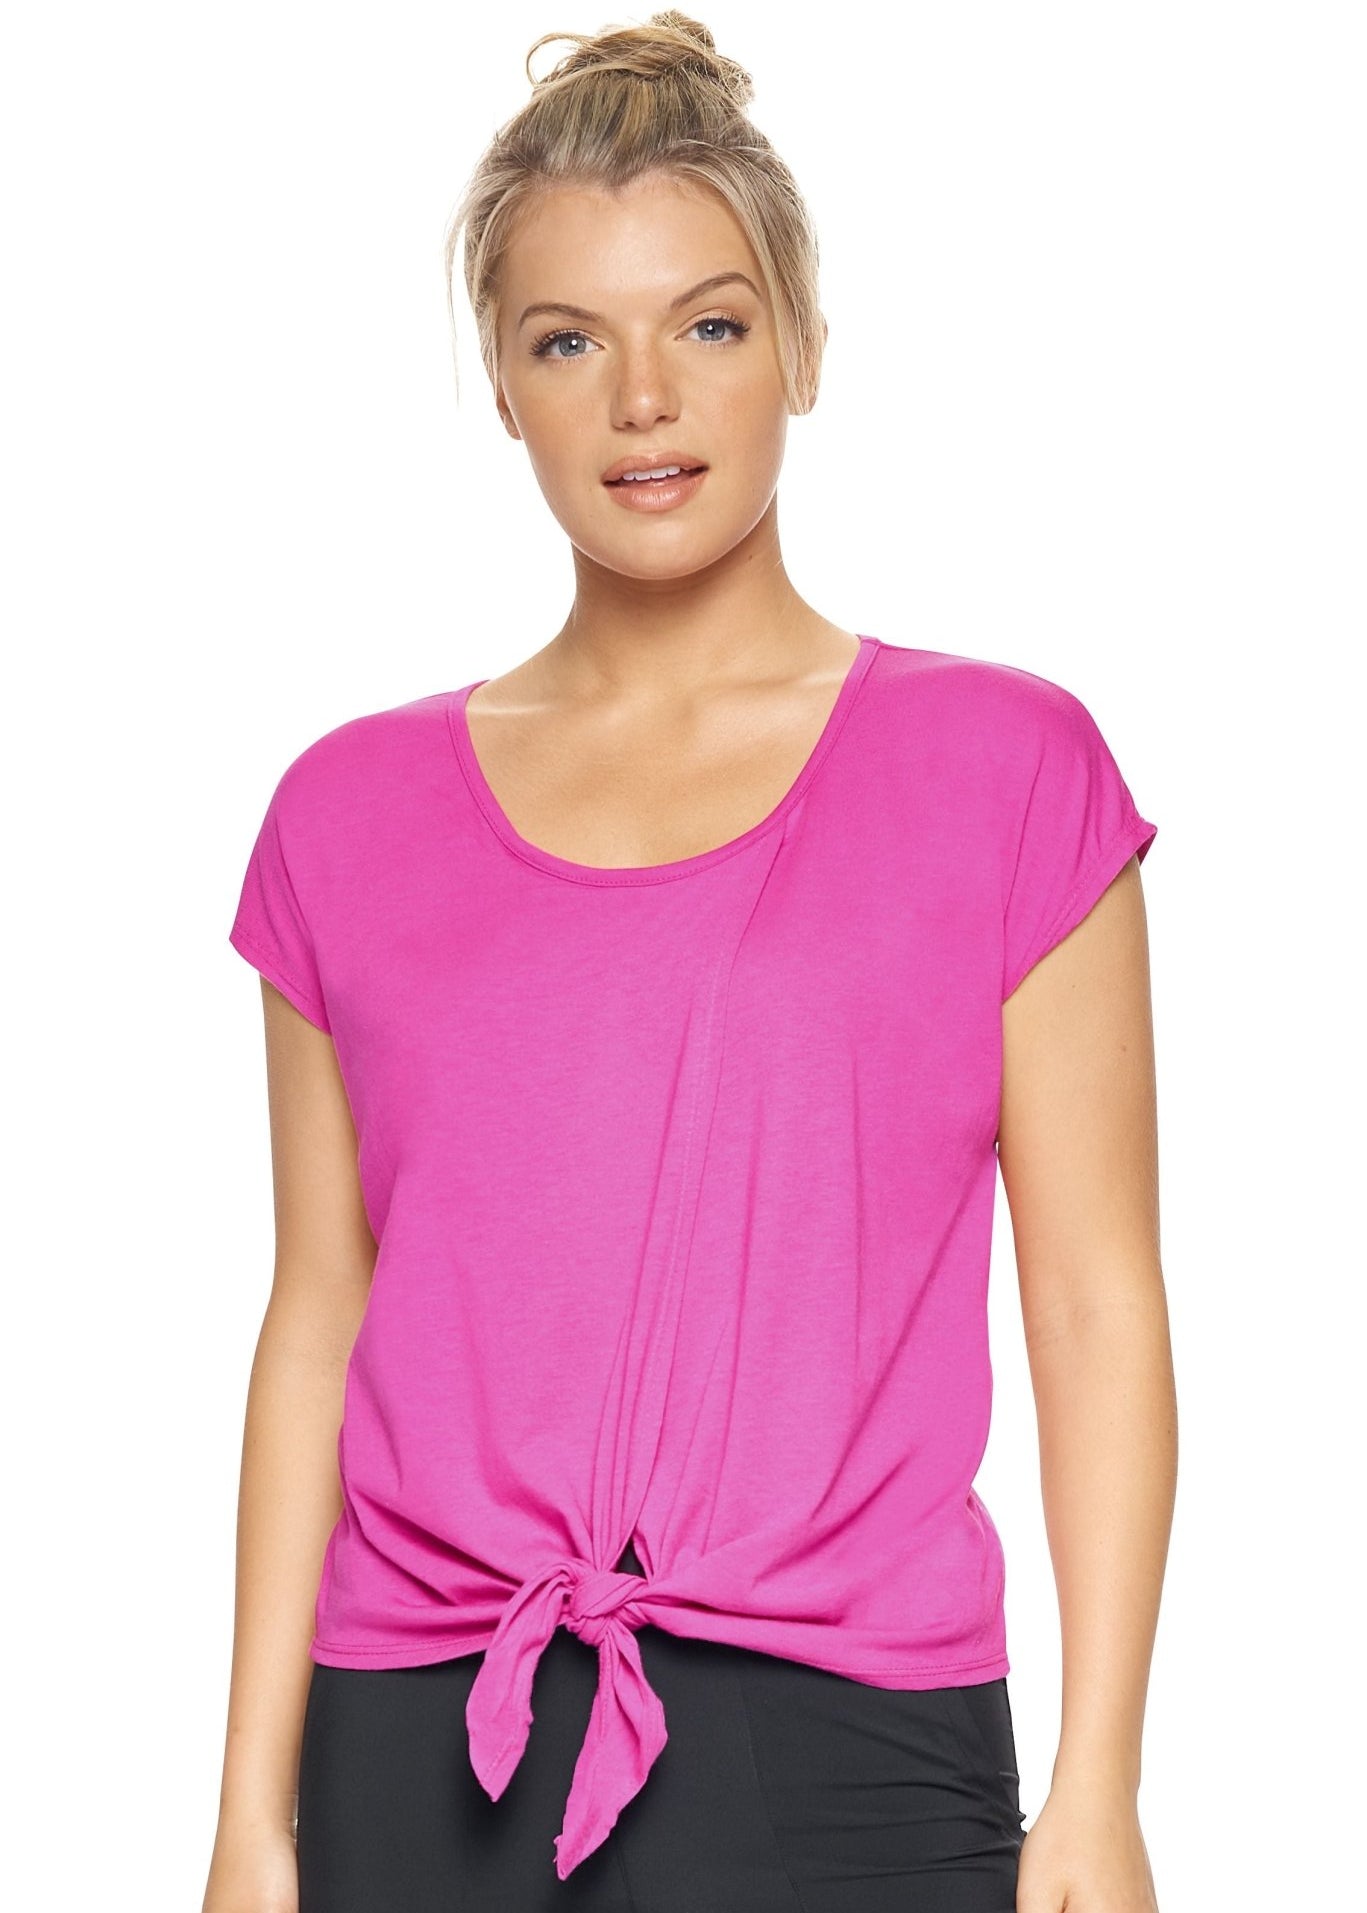 Expert Brand MoCA Plant Based Split Front Tie T-Shirt - Plus - DressbarnActivewear